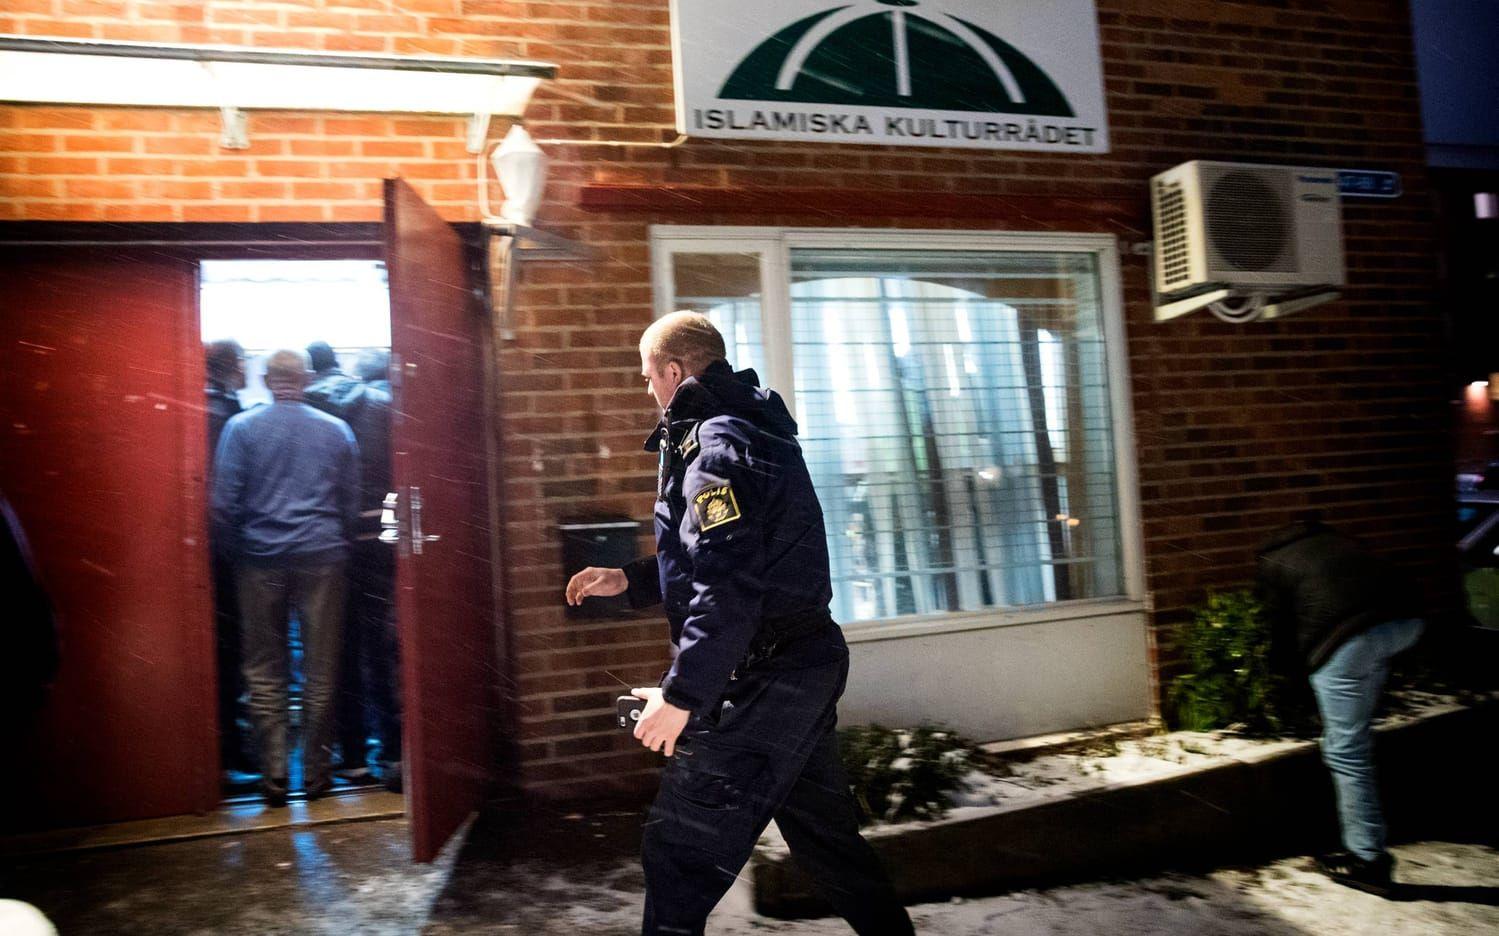 Polis kallades till platsen för att medla mellan grupperna på onsdagskvällen i förra veckan. Bild: Anders Ylander